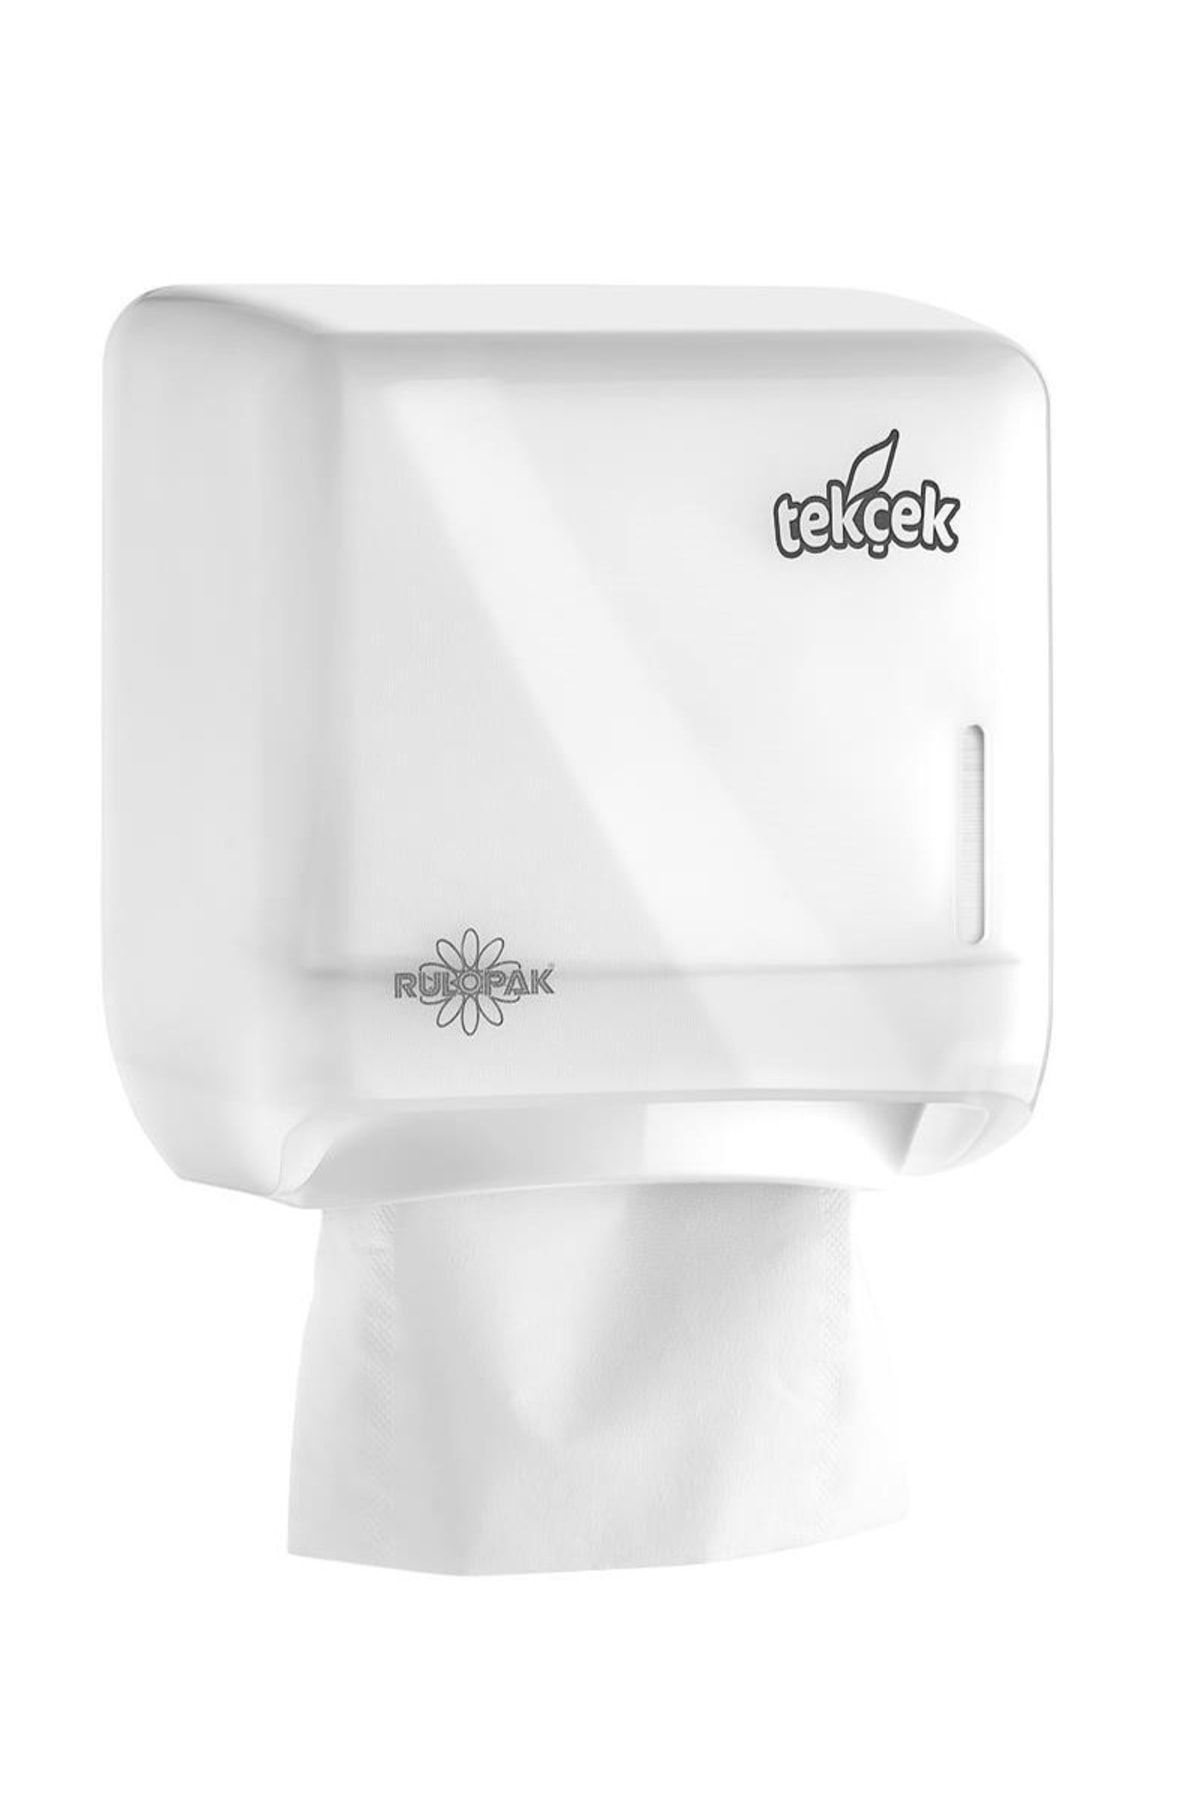 Rulopak Tekçek Minituvalet Kağıdı Dispenseri Transparan Beyaz